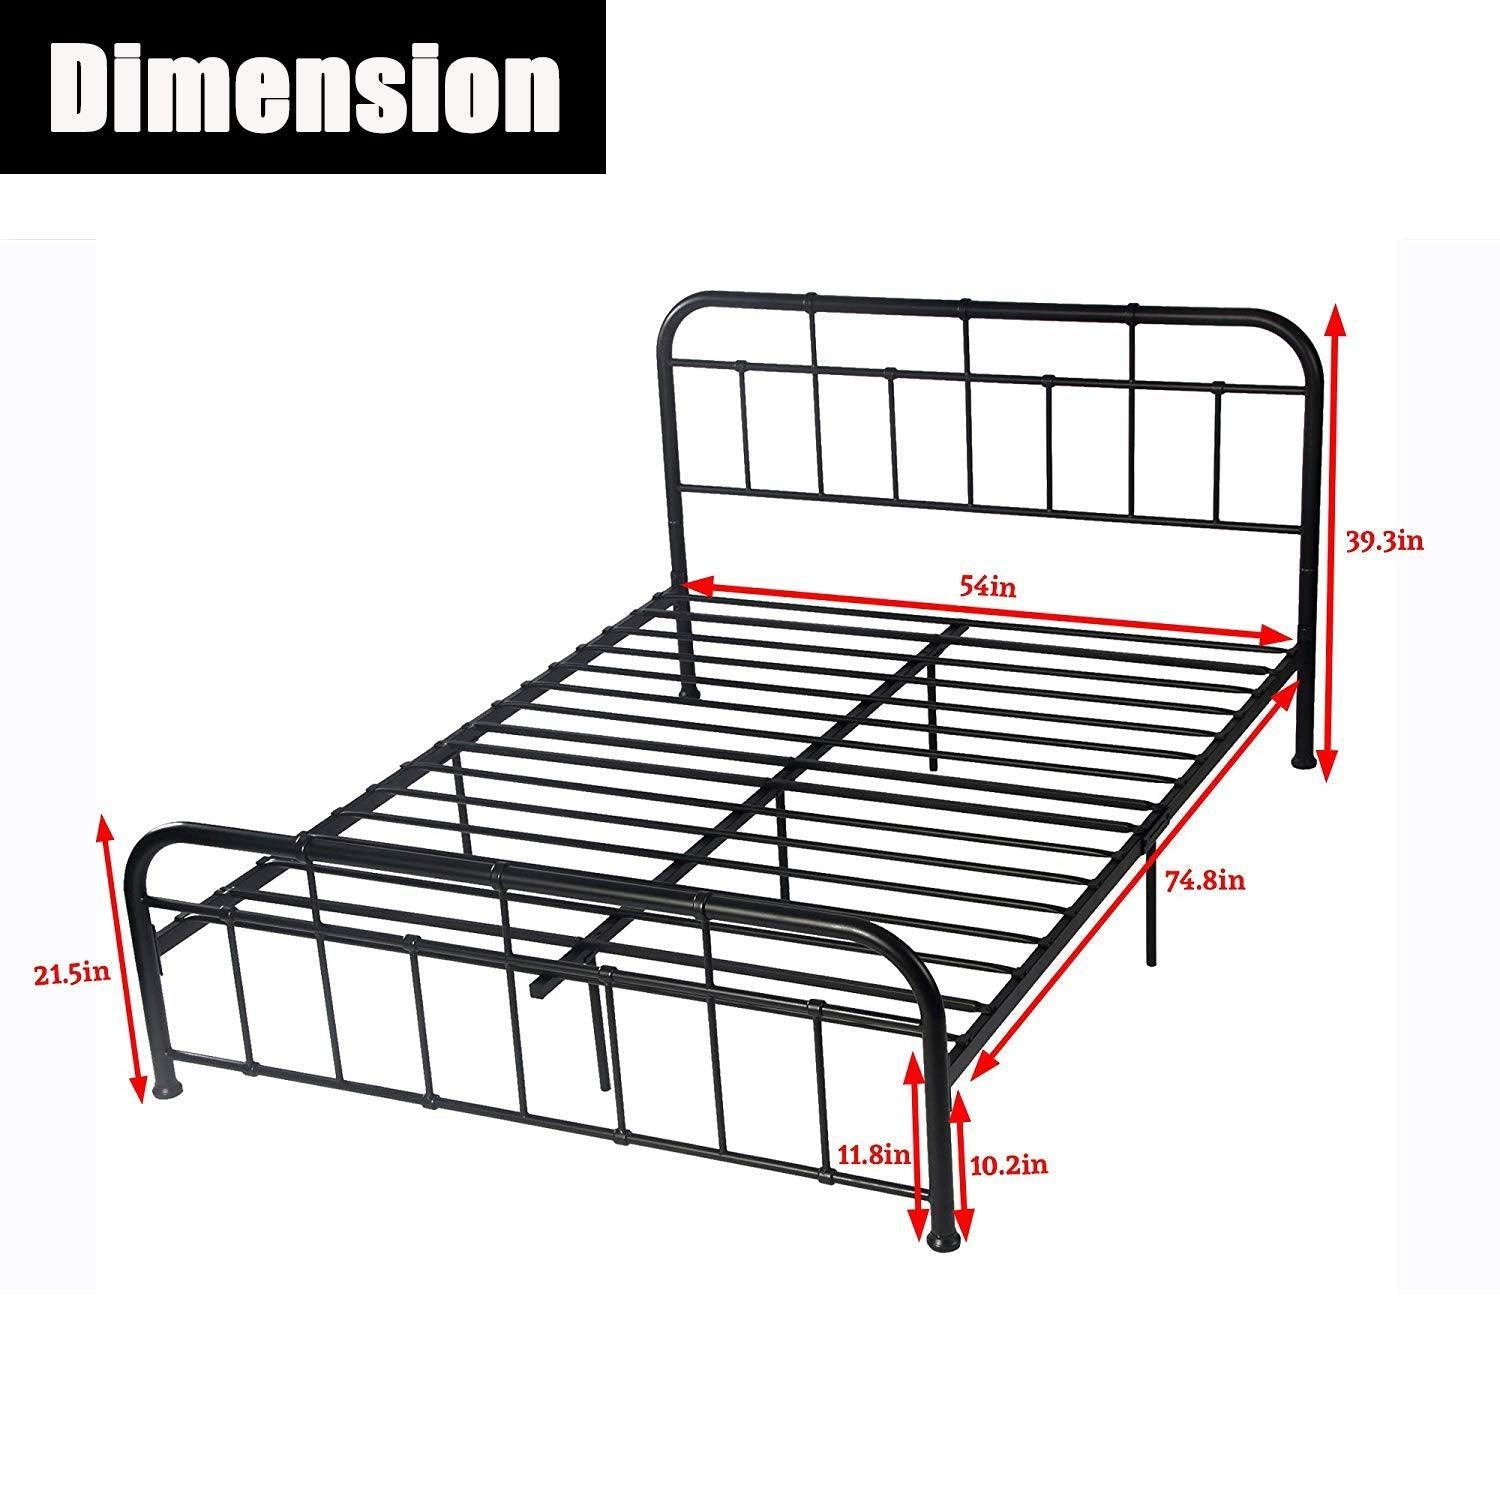 Bosonshop Mordern Full Size Platform Bed with Frame, Black, 12inch